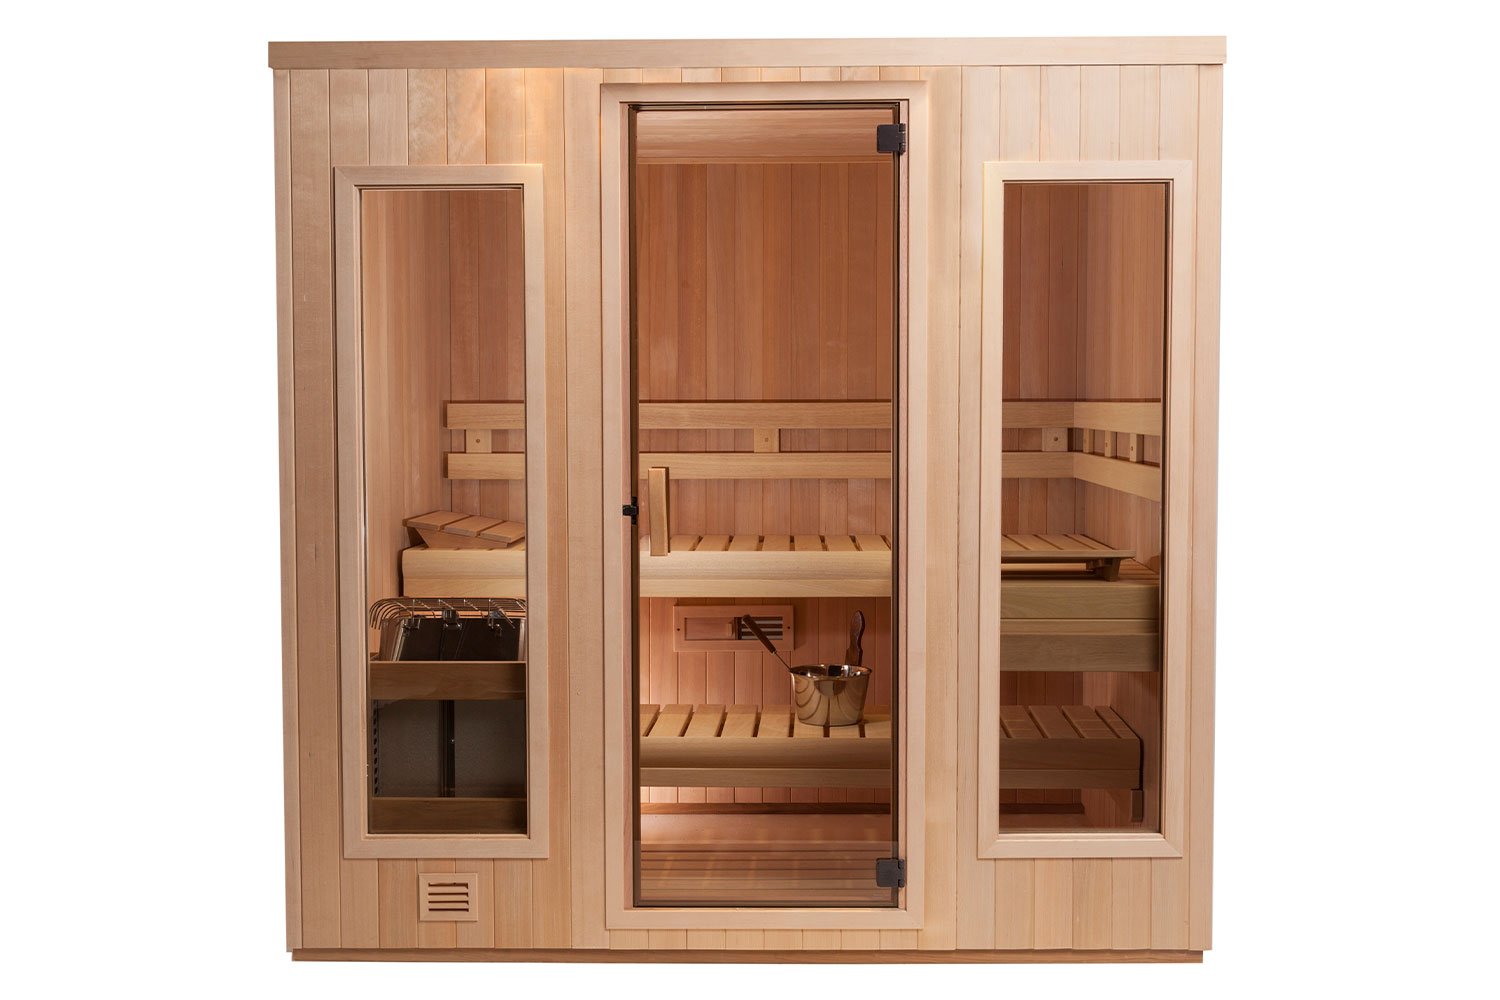 Helo Freestanding, Panel-Built Saunas